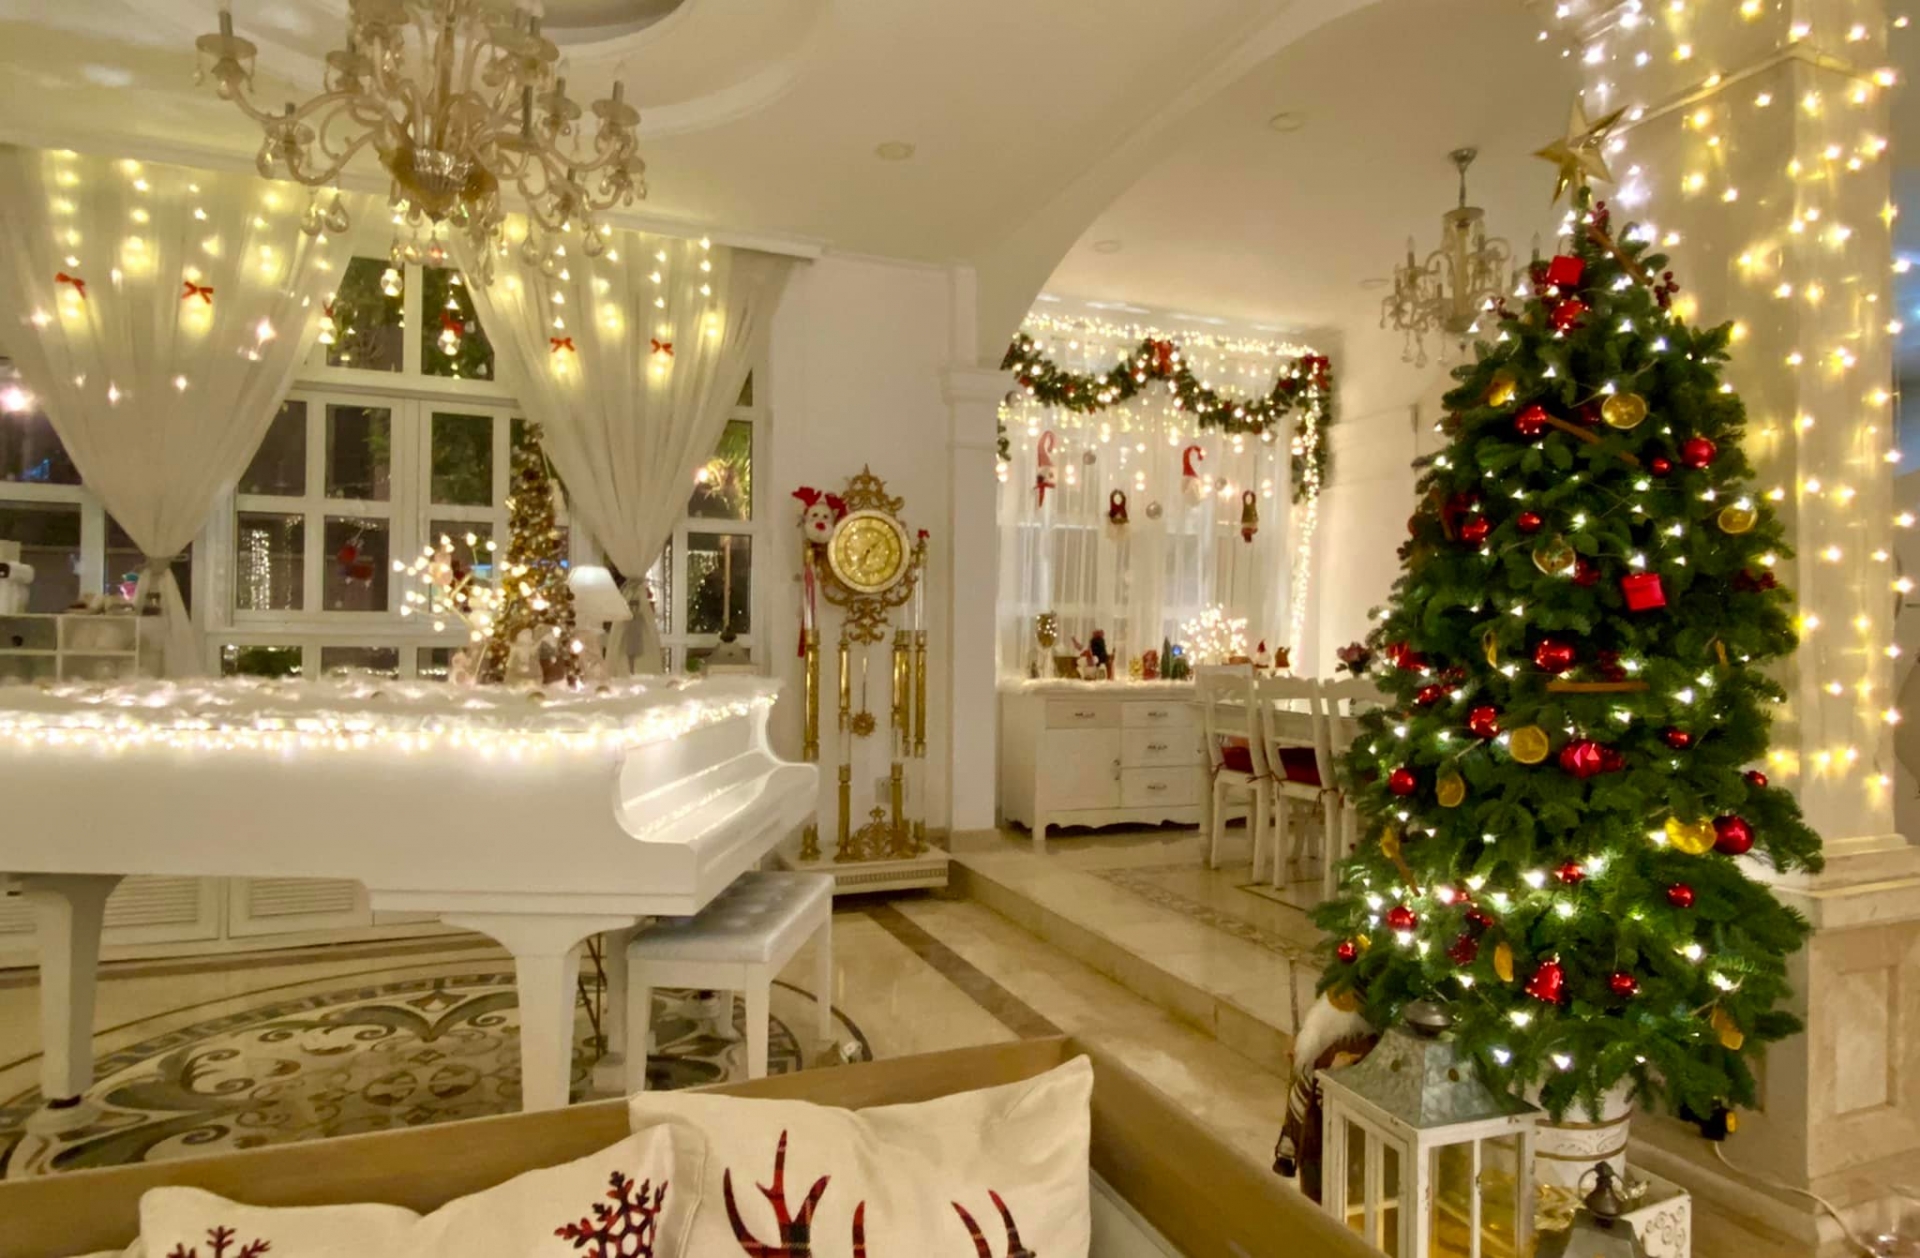 Giáng Sinh tại nhà sao: Cường Đô La sắm cây thông khổng lồ, Hà Hồ có Lisa - Leon phụ 'trang trí' - Ảnh 3